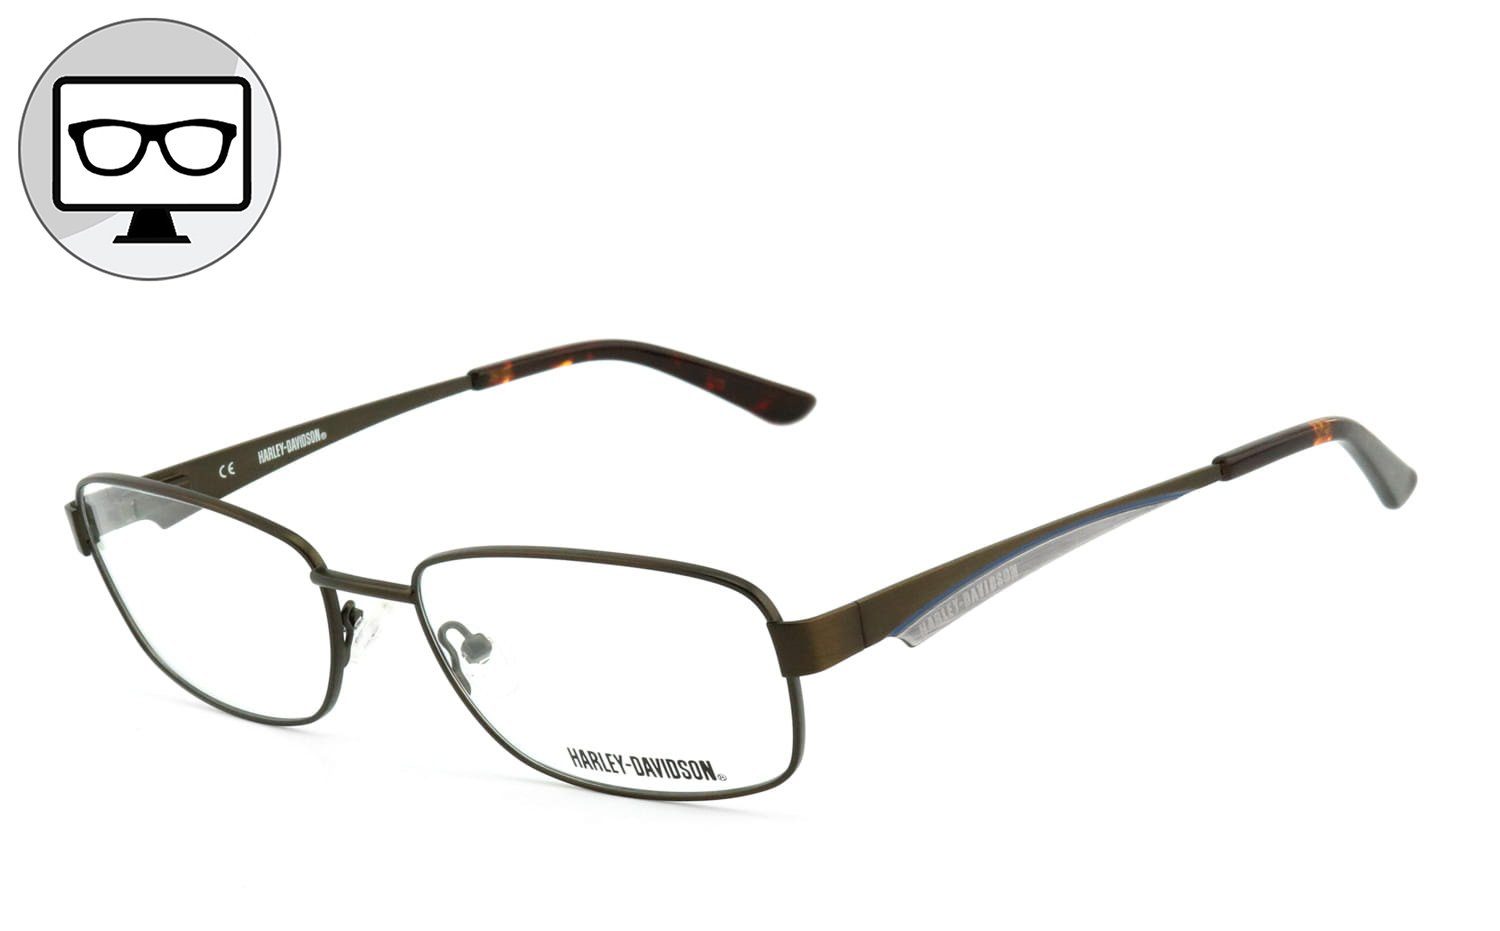 HARLEY-DAVIDSON Brille Blaulichtfilter Brille, Blaulicht Brille, Bildschirmbrille, Bürobrille, Gamingbrille, ohne Sehstärke | Brillengestelle